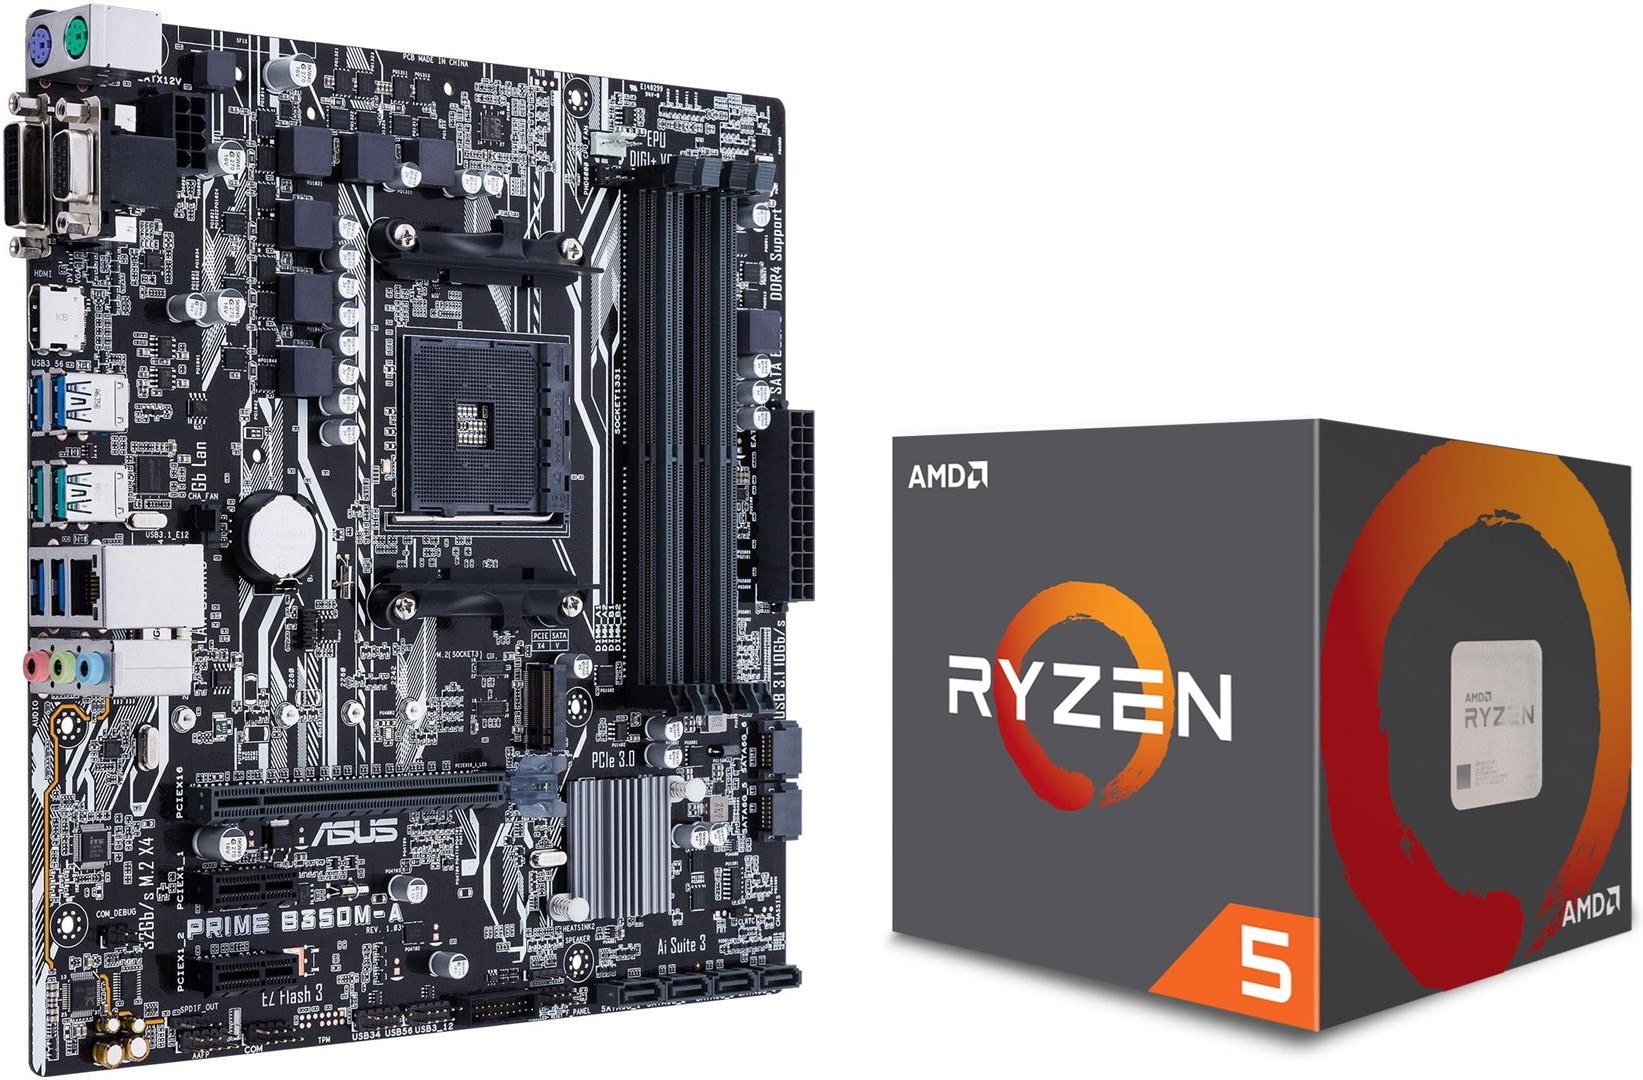 Ryzen 5 - 1600 + Asus prime B350M-A - Asus Prime moderkort med AMD